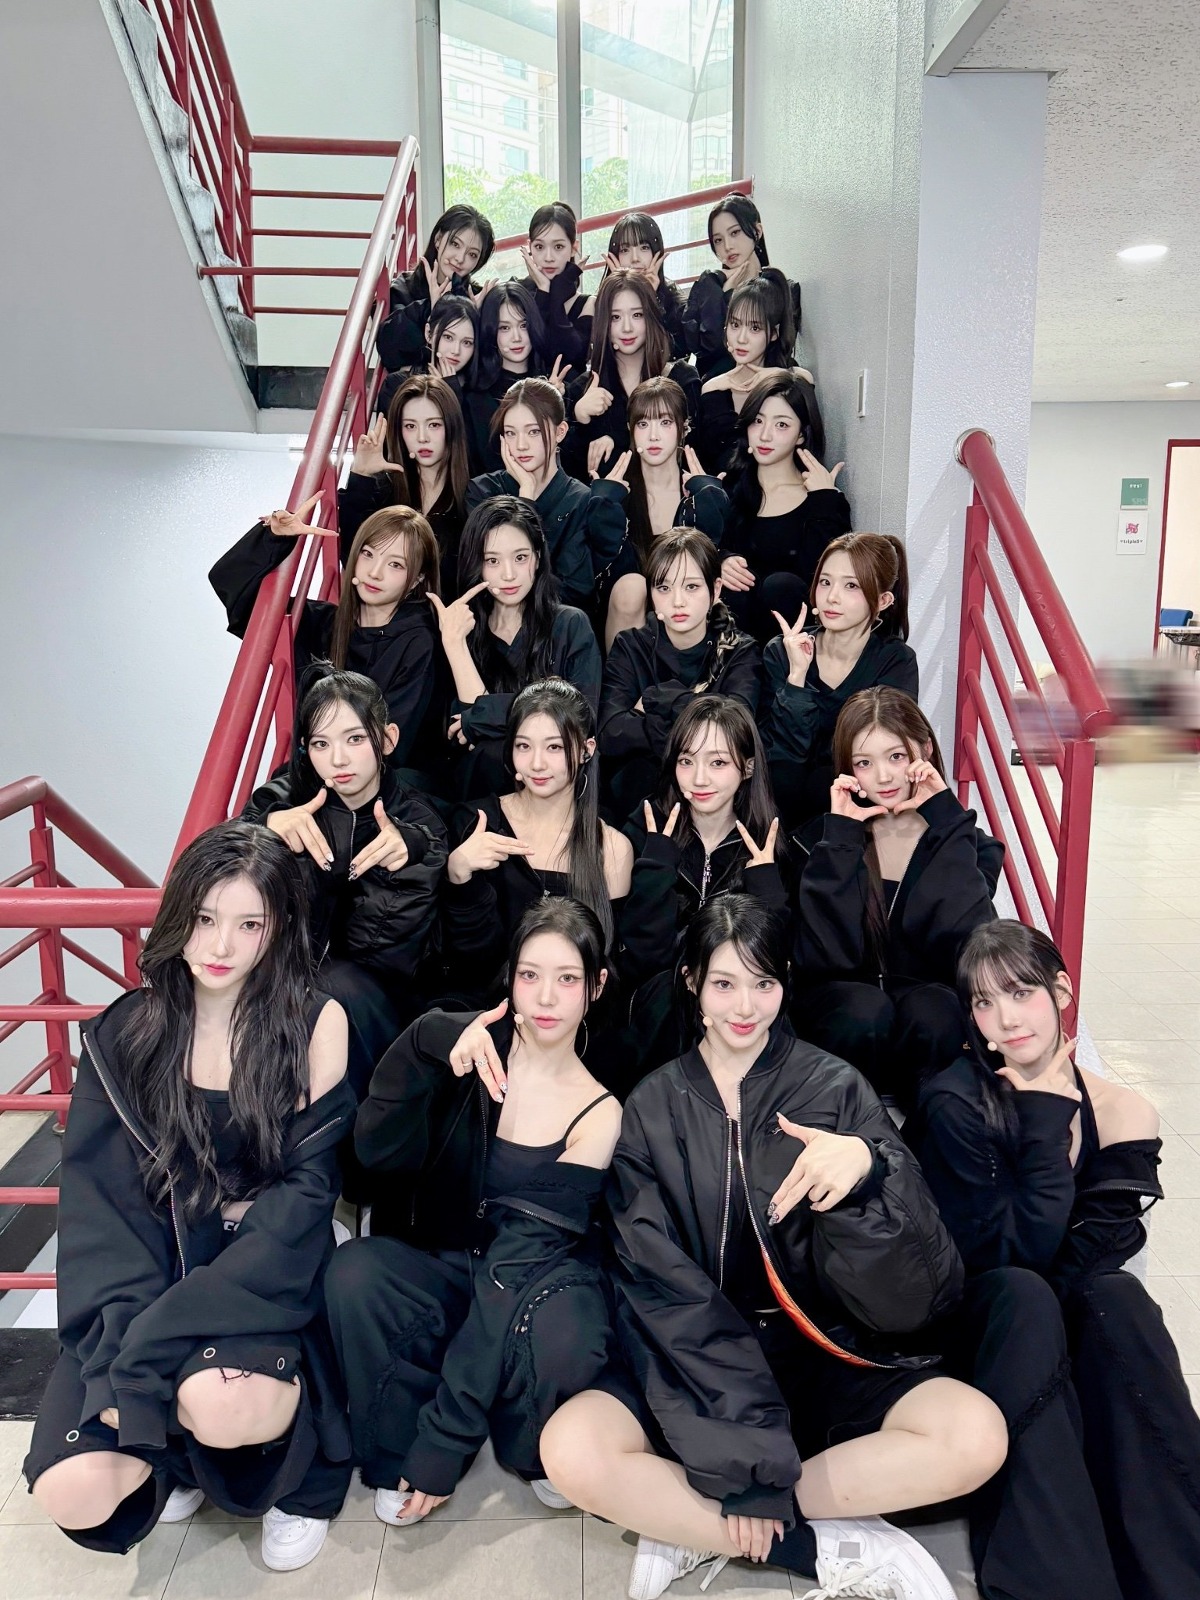 圖 有24位成員的女團在樓梯上拍照會發生的事